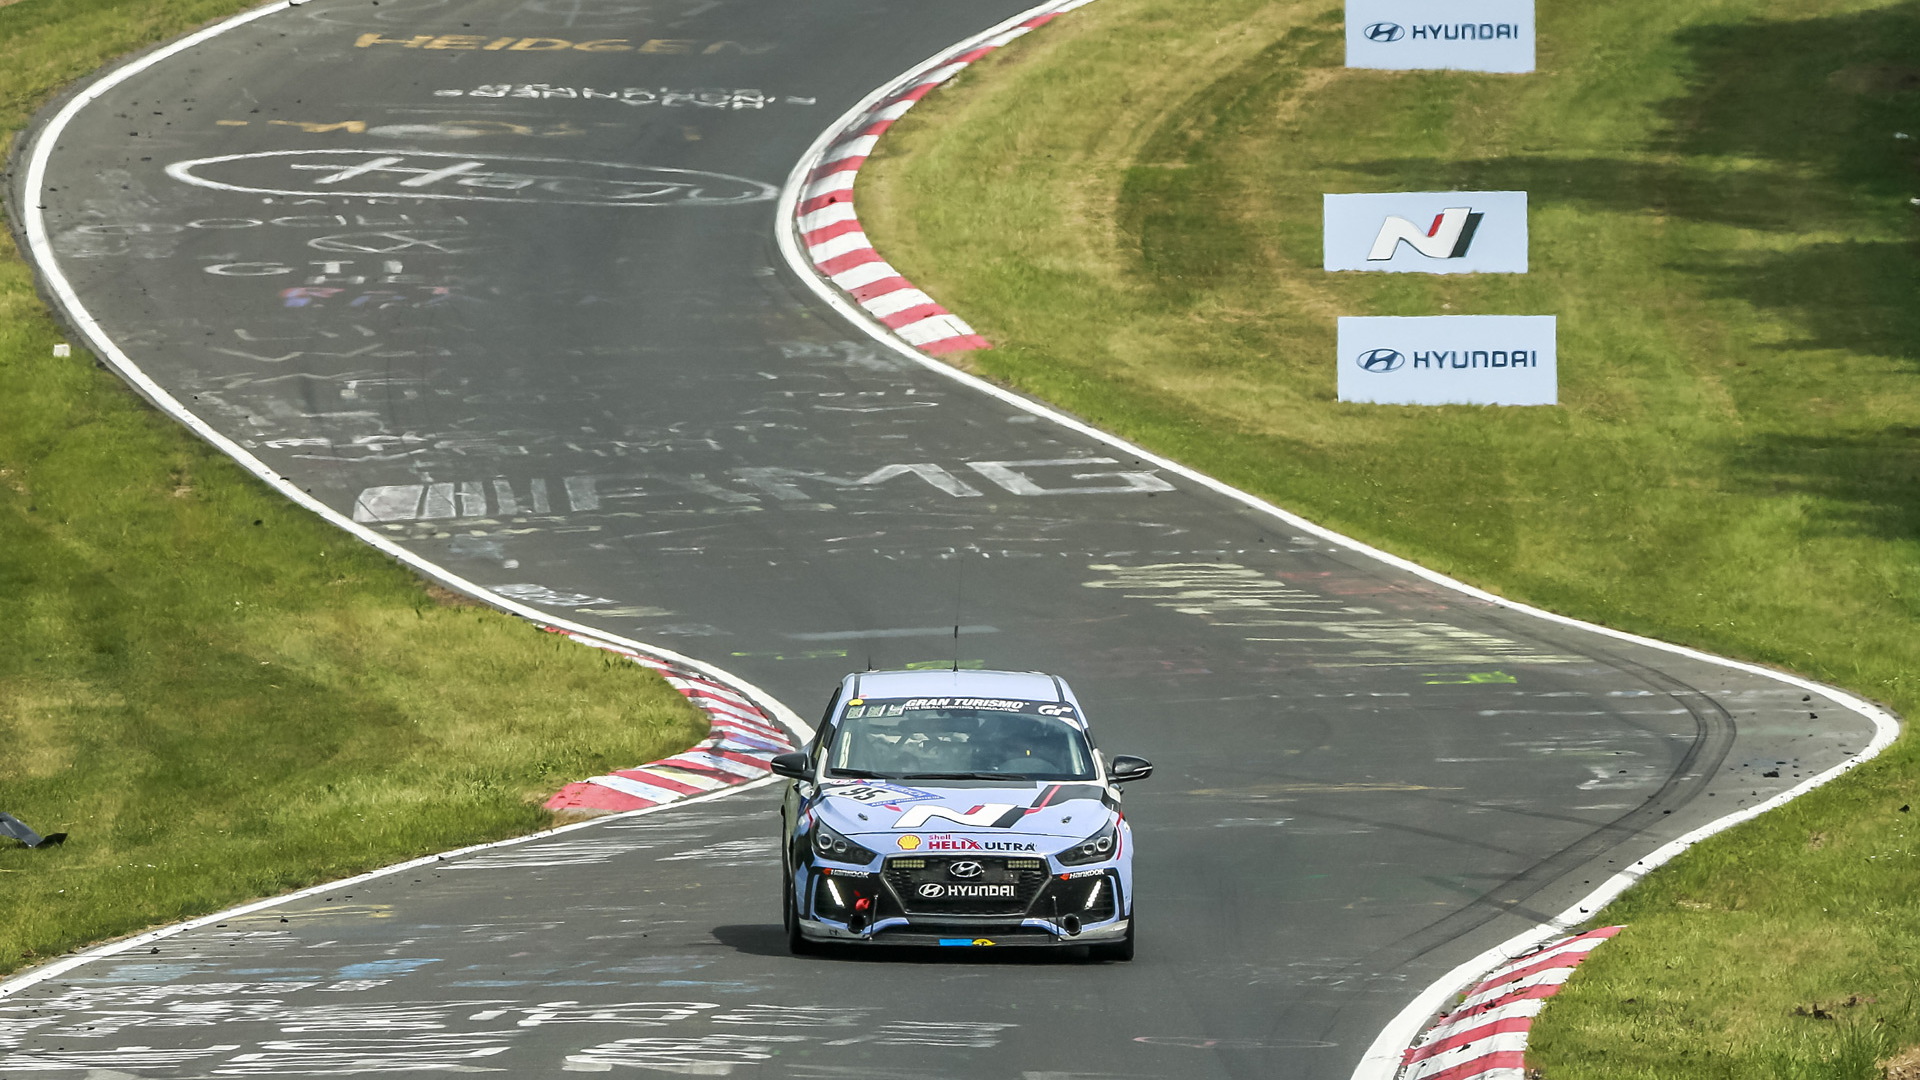 2018 Hyundai i30 N races in the 2017 24 Hours Nürburgring